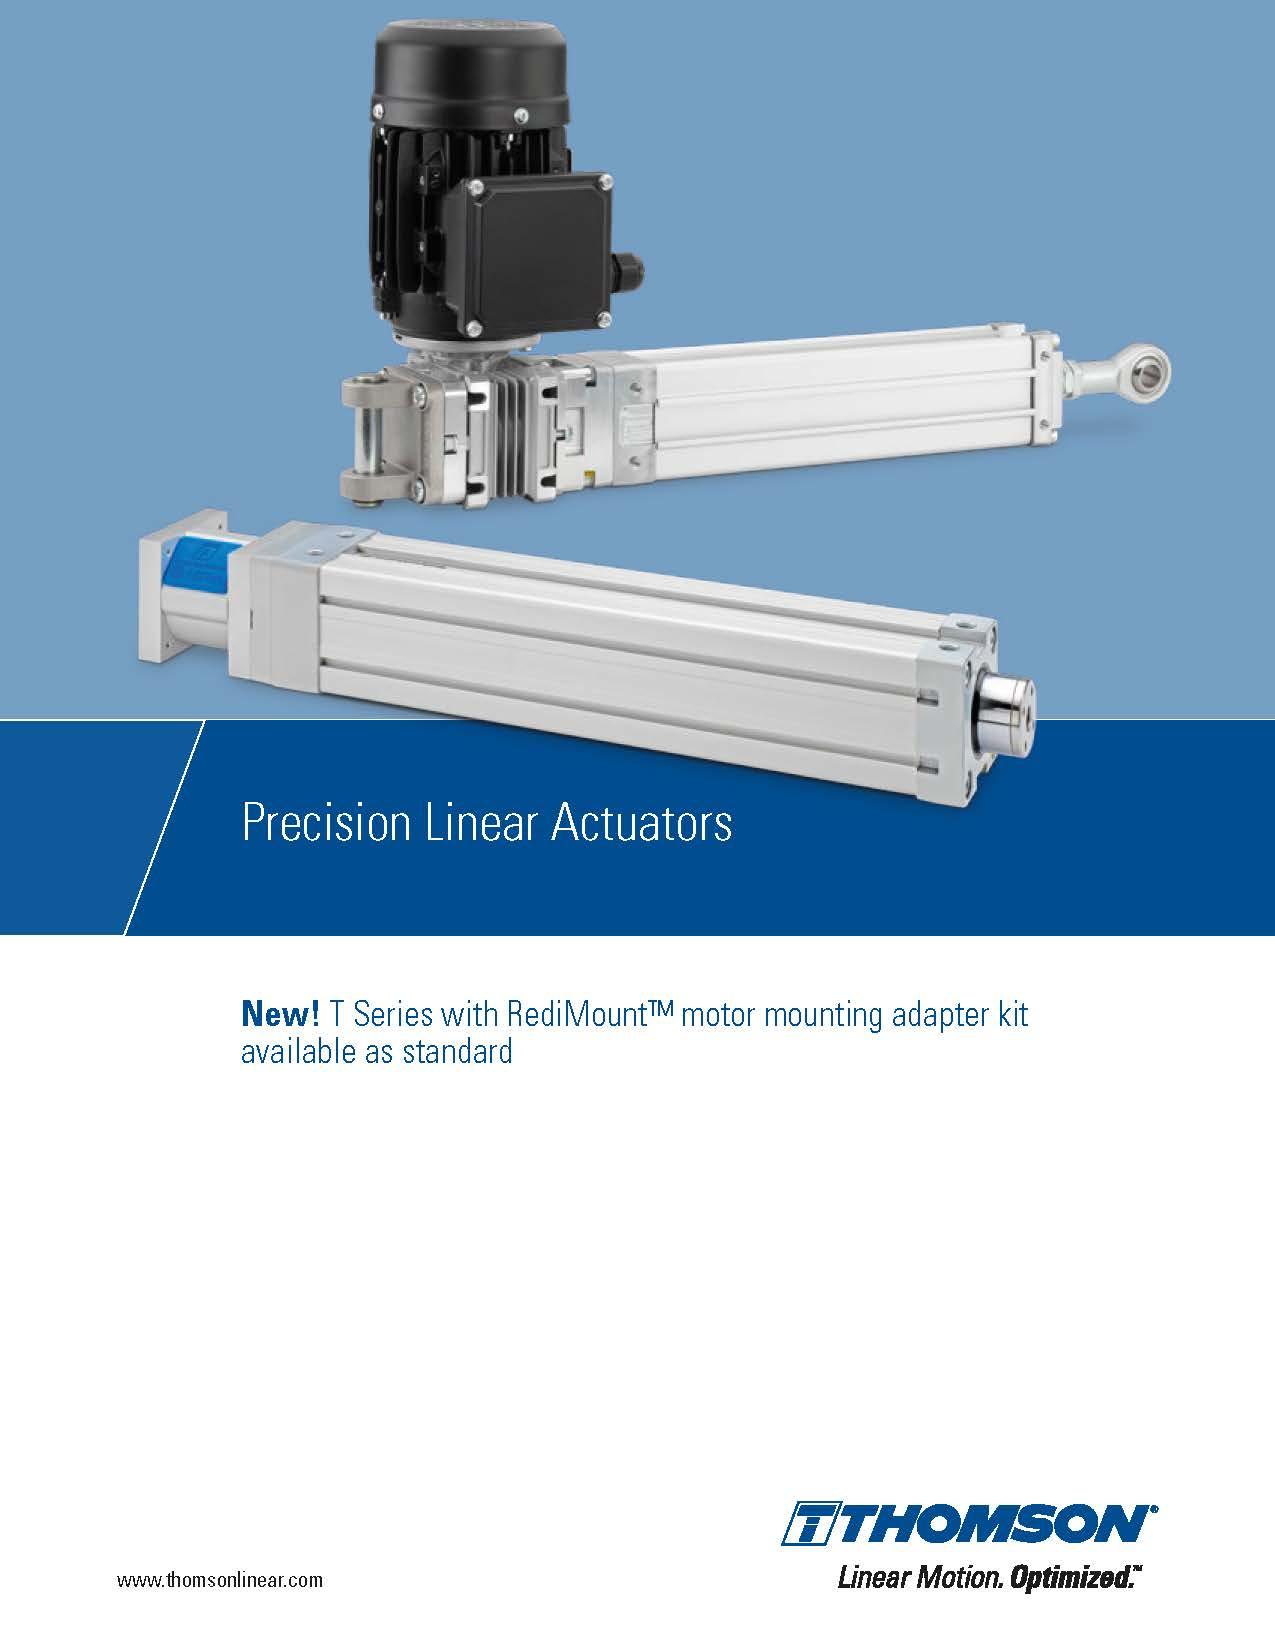 Thomson Precision Linear Actuators EN